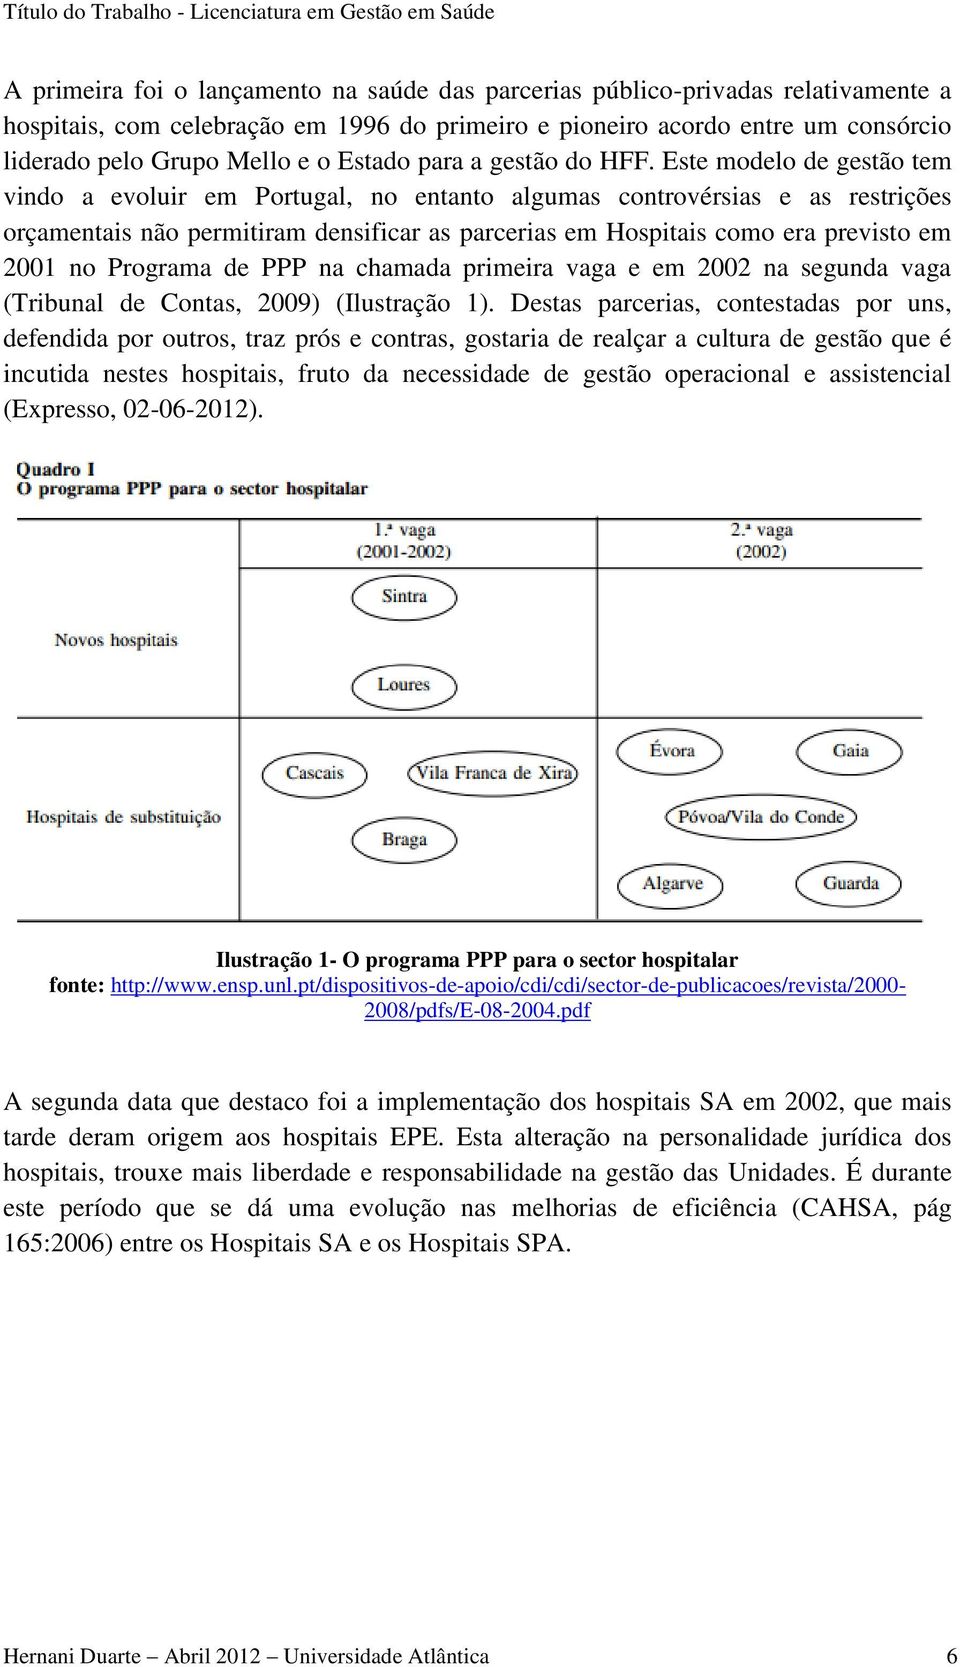 Este modelo de gestão tem vindo a evoluir em Portugal, no entanto algumas controvérsias e as restrições orçamentais não permitiram densificar as parcerias em Hospitais como era previsto em 2001 no